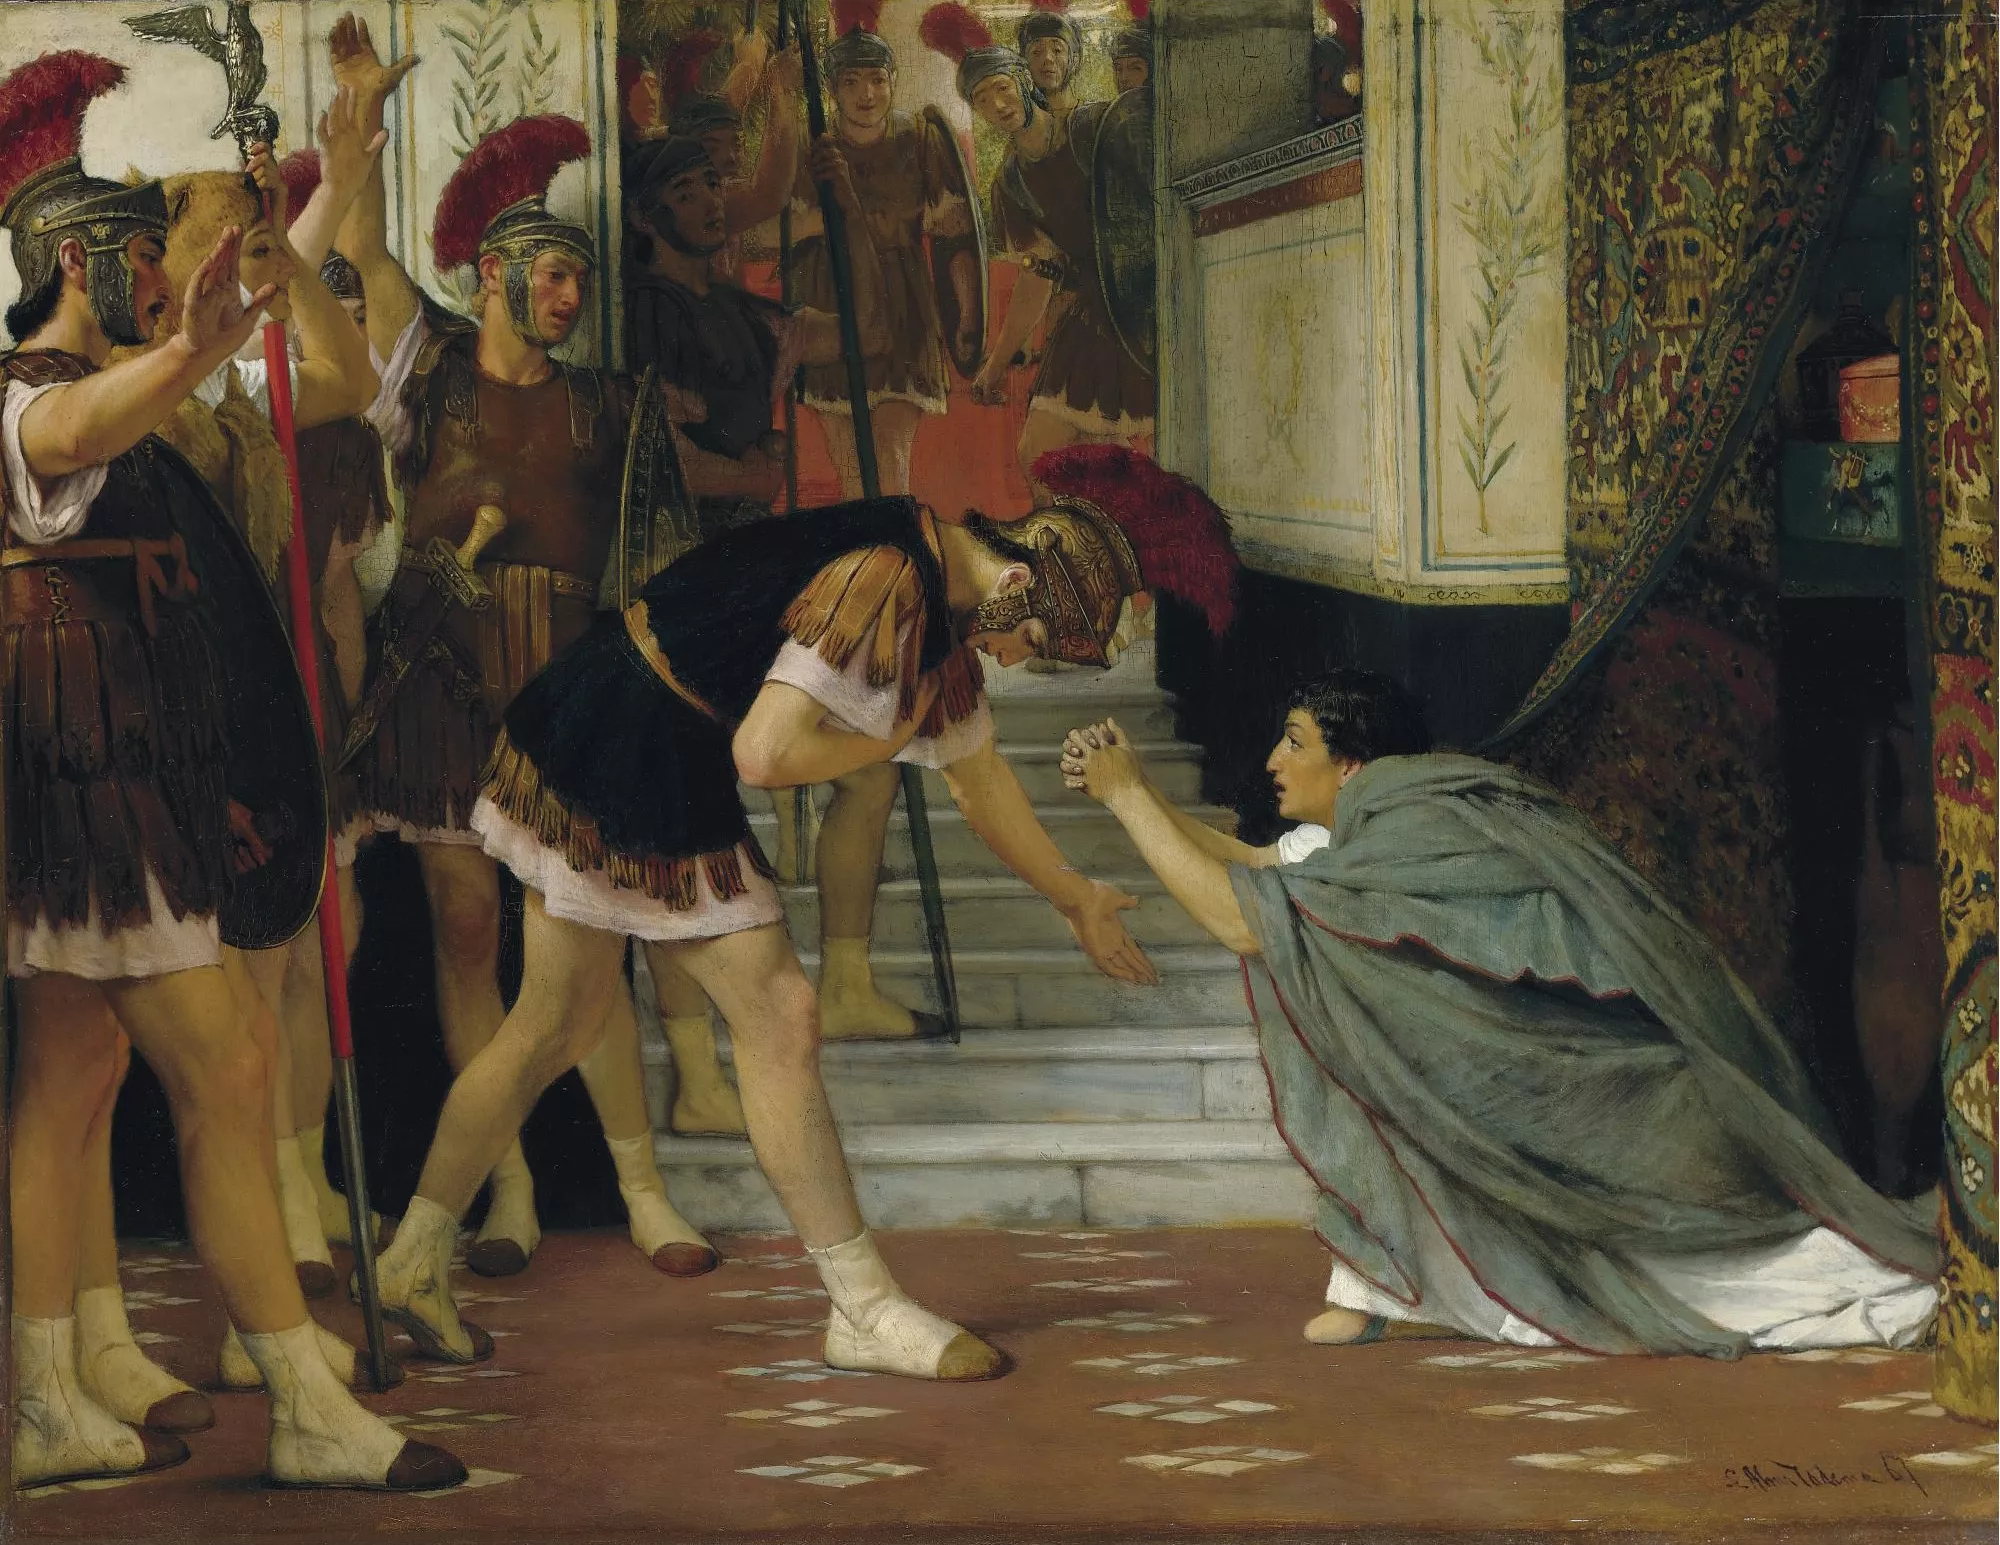 Lawrence Alma-Tadema va pintar l’escena en què Claudi, amagat rere una cortina, acaba sent nomenat emperador pels guàrdies pretorians